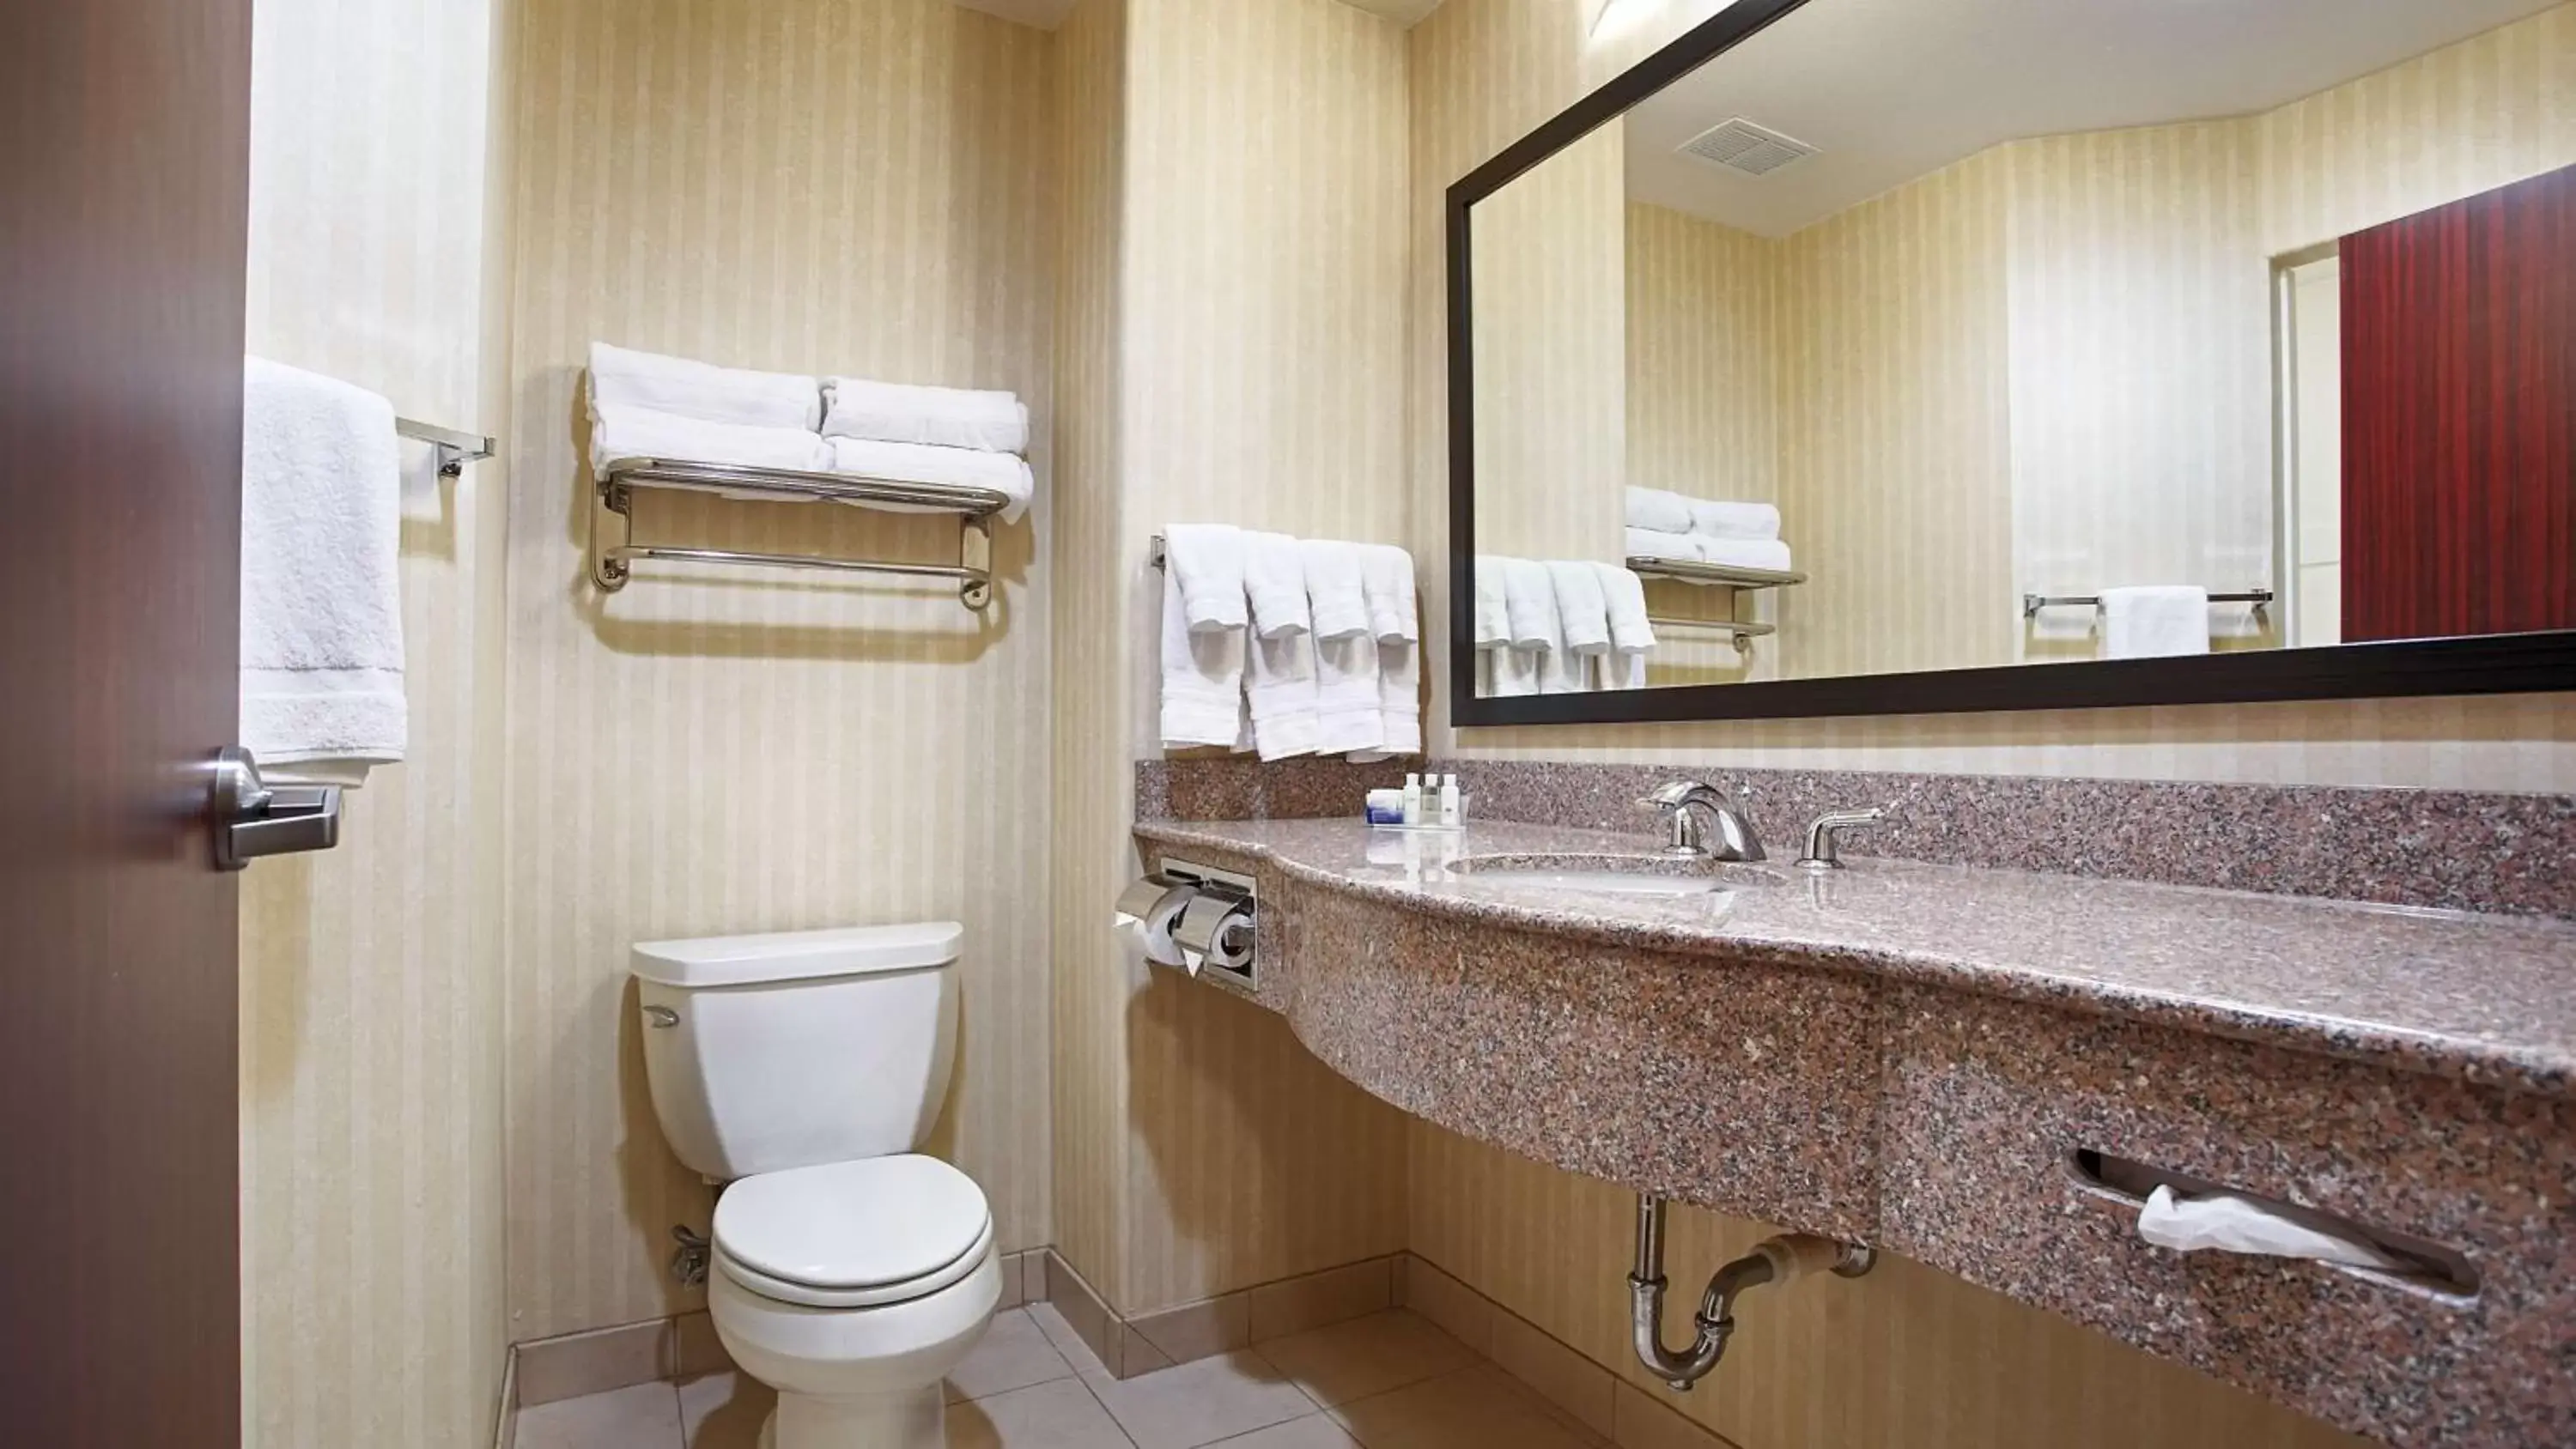 Photo of the whole room, Bathroom in Best Western Plus Waxahachie Inn & Suites